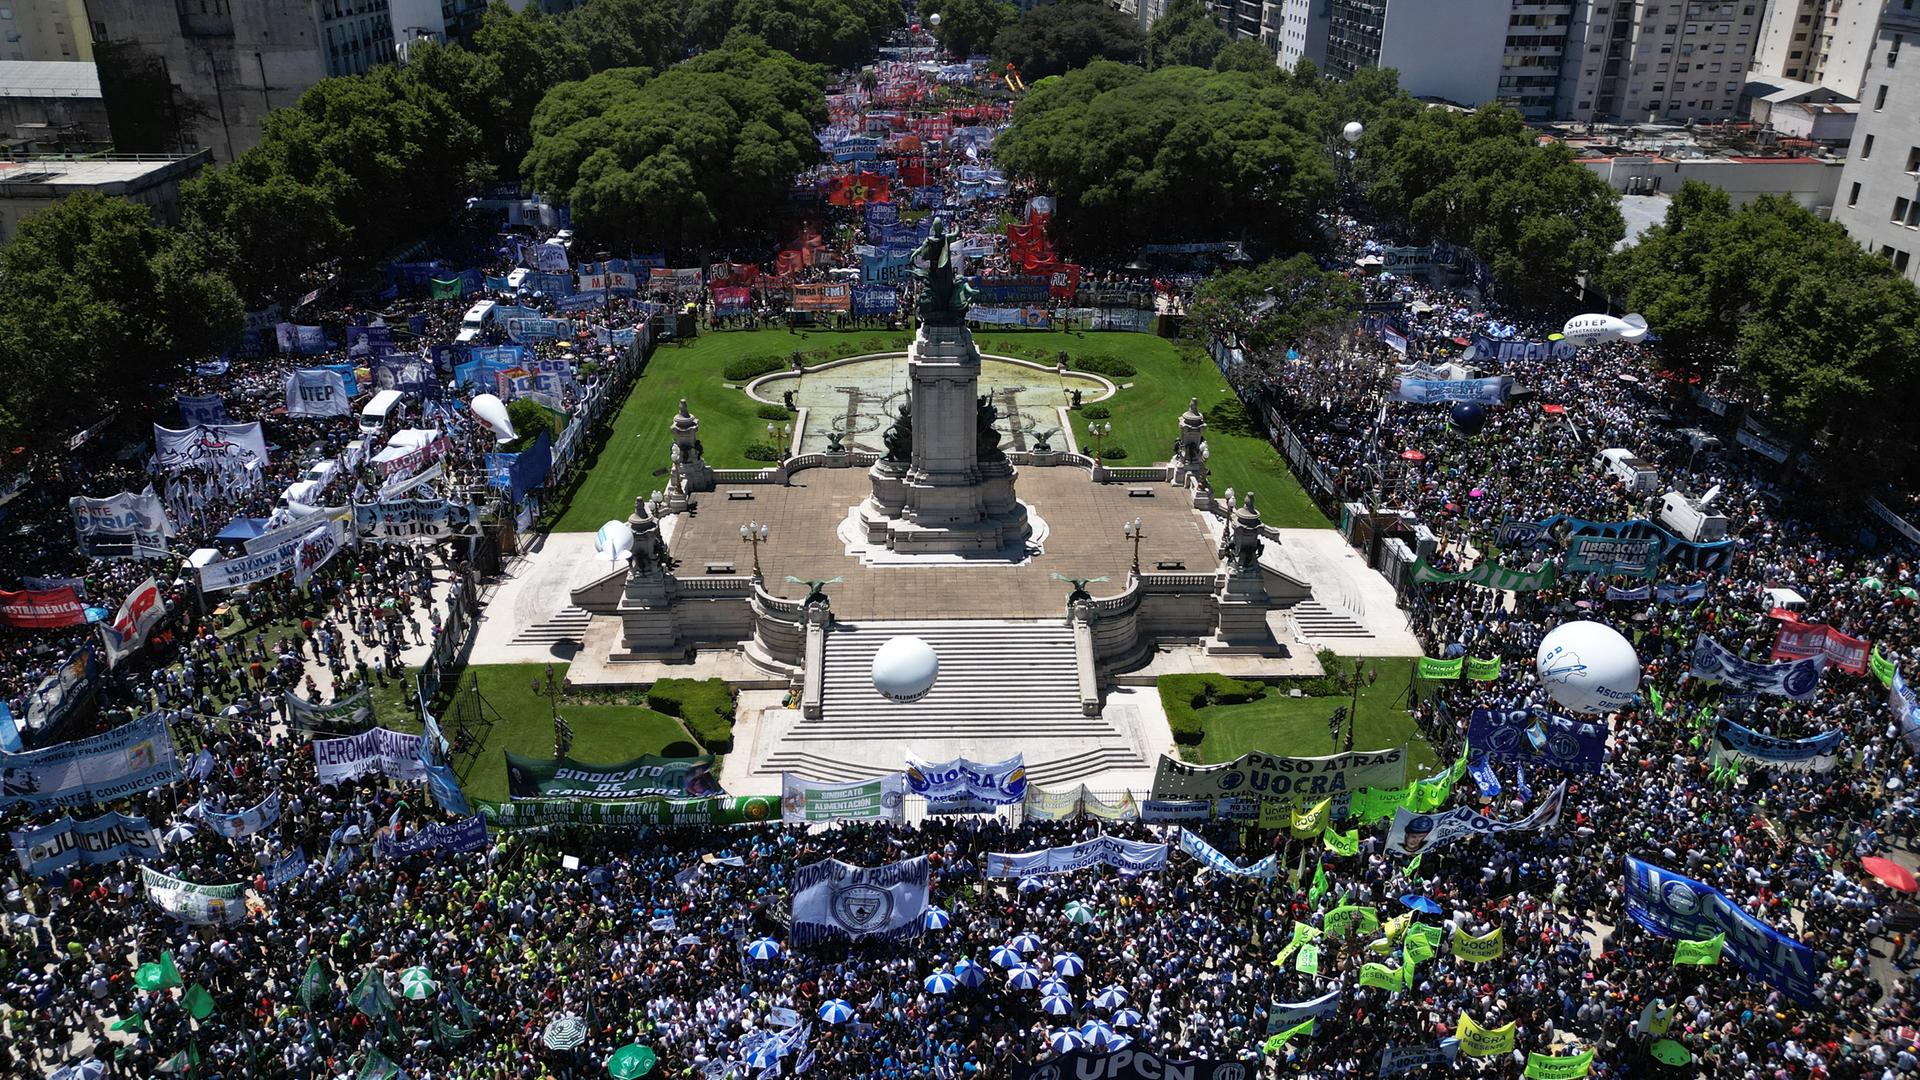 Tausende Demonstranten stehen auf einem großen Platz in Buenos Aires, bunte Fahnen und Plakate sind zu erkennen.